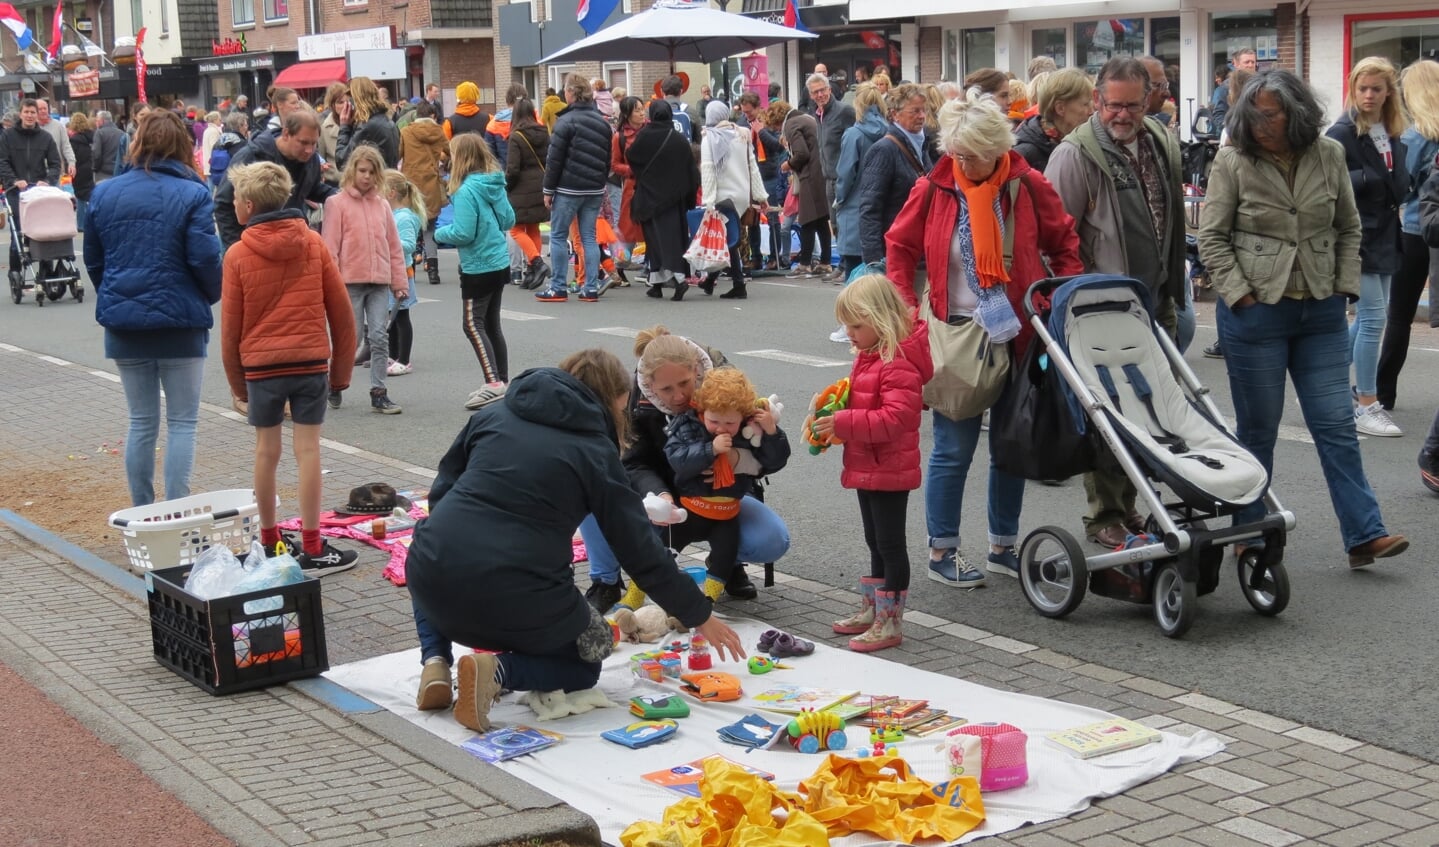 De drukbezochte vrijmarkt op de Hessenweg in De Bilt bood weer veel spulletjes voor een zacht prijsje. Muzikanten verzamelden muntjes met drums of gitaarspel, anderen hadden creatieve ideeën die geld opbrachten bedacht. 